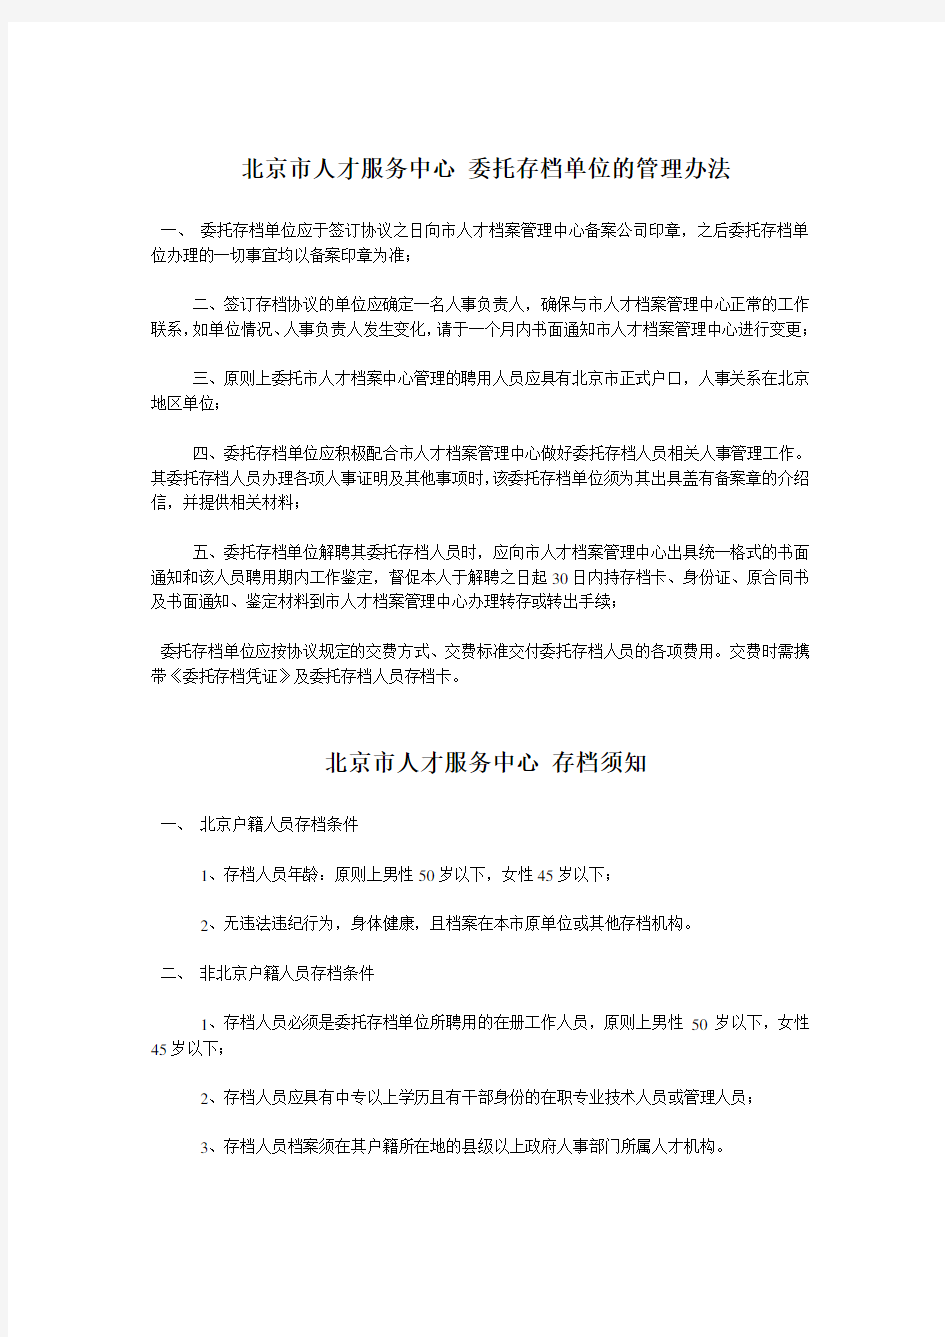 北京市人才服务中心 委托存档单位的管理办法